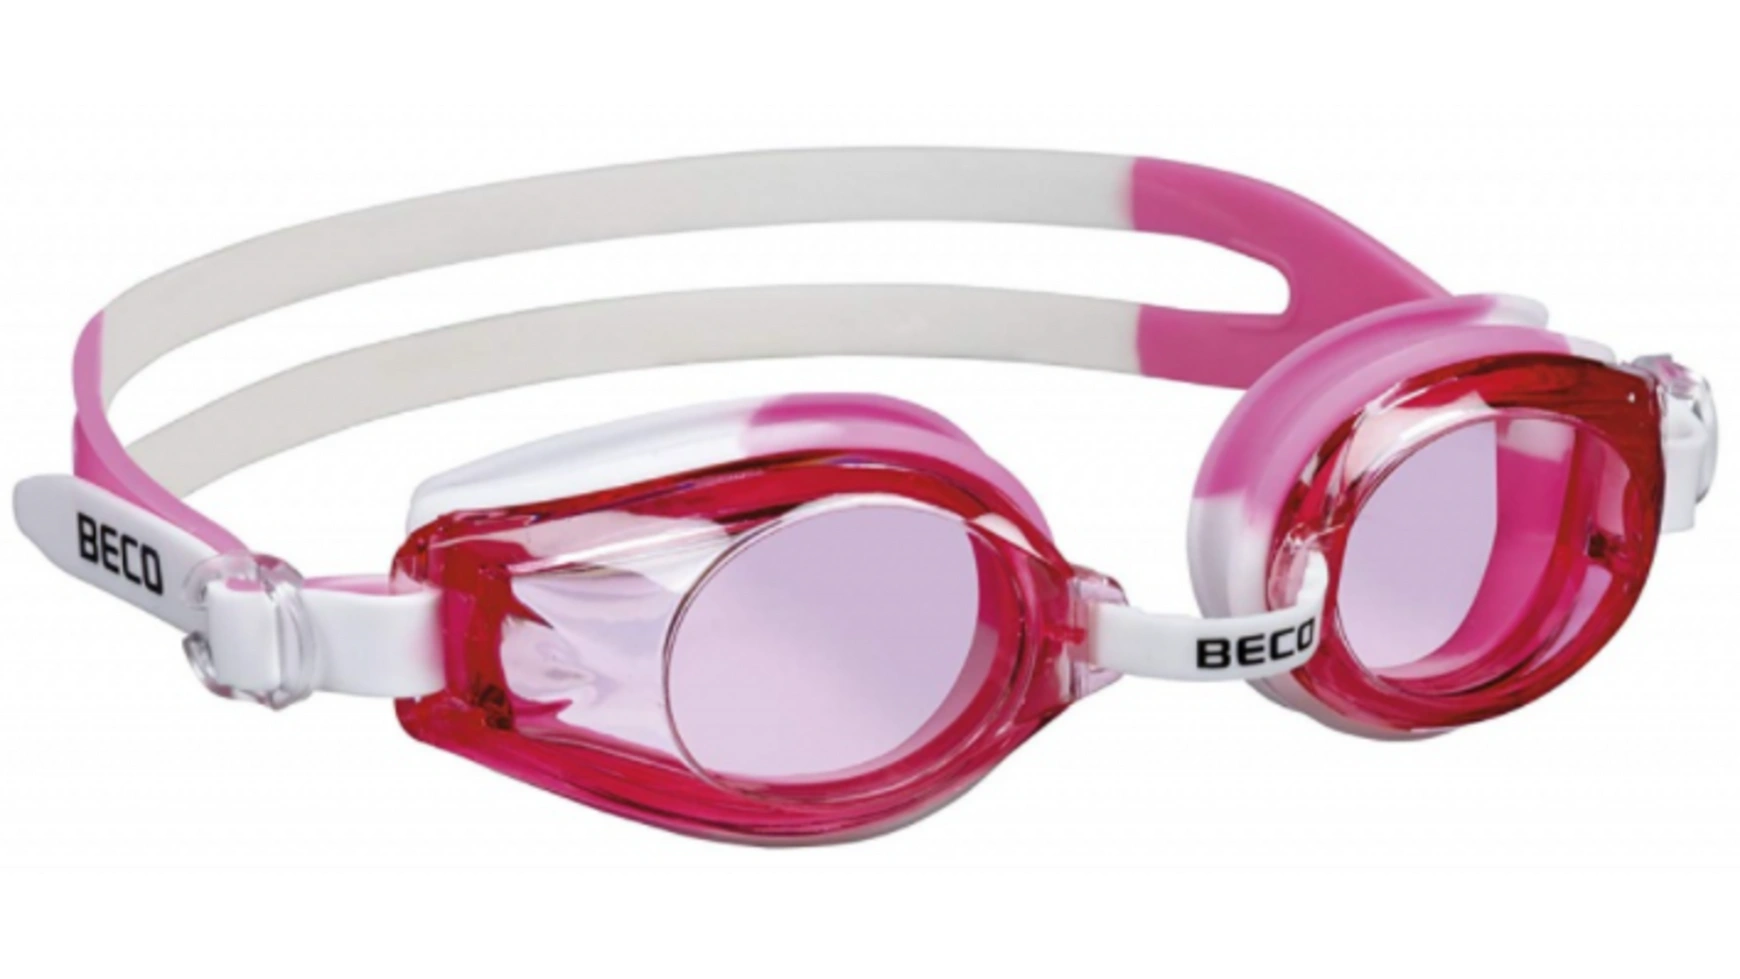 Beco Детские очки для плавания RIMINI 12+ белый/розовый очки для плавания по рецепту профессиональные силиконовые противотуманные очки очки для плавания очки для дайвинга для женщин и мужчин п